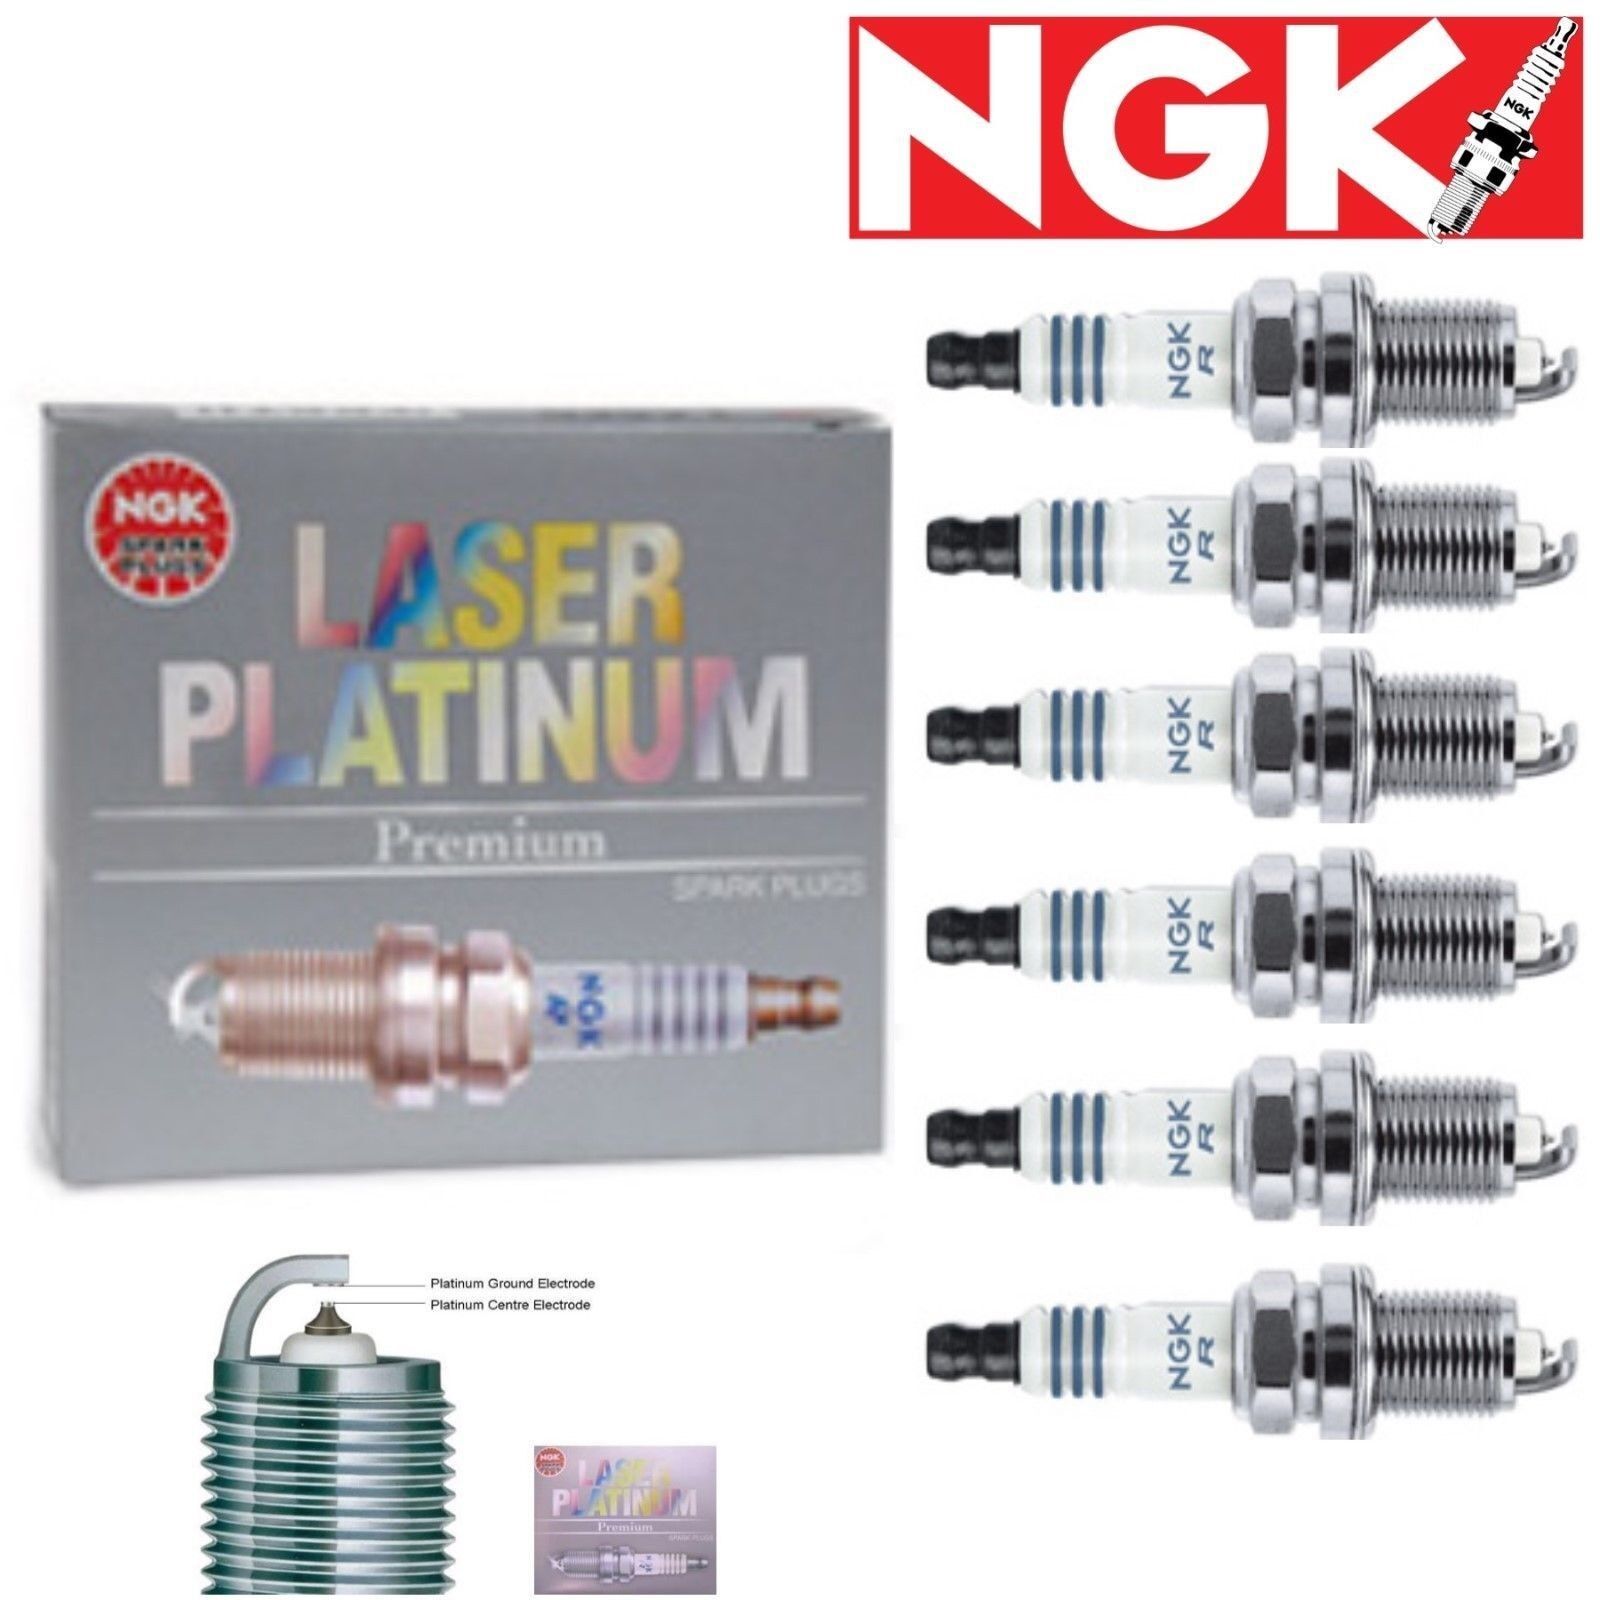 6 Pack NGK Laser Platinum Spark Plugs 2007-2009 Lincoln MKX 3.5L V6 Kit Set